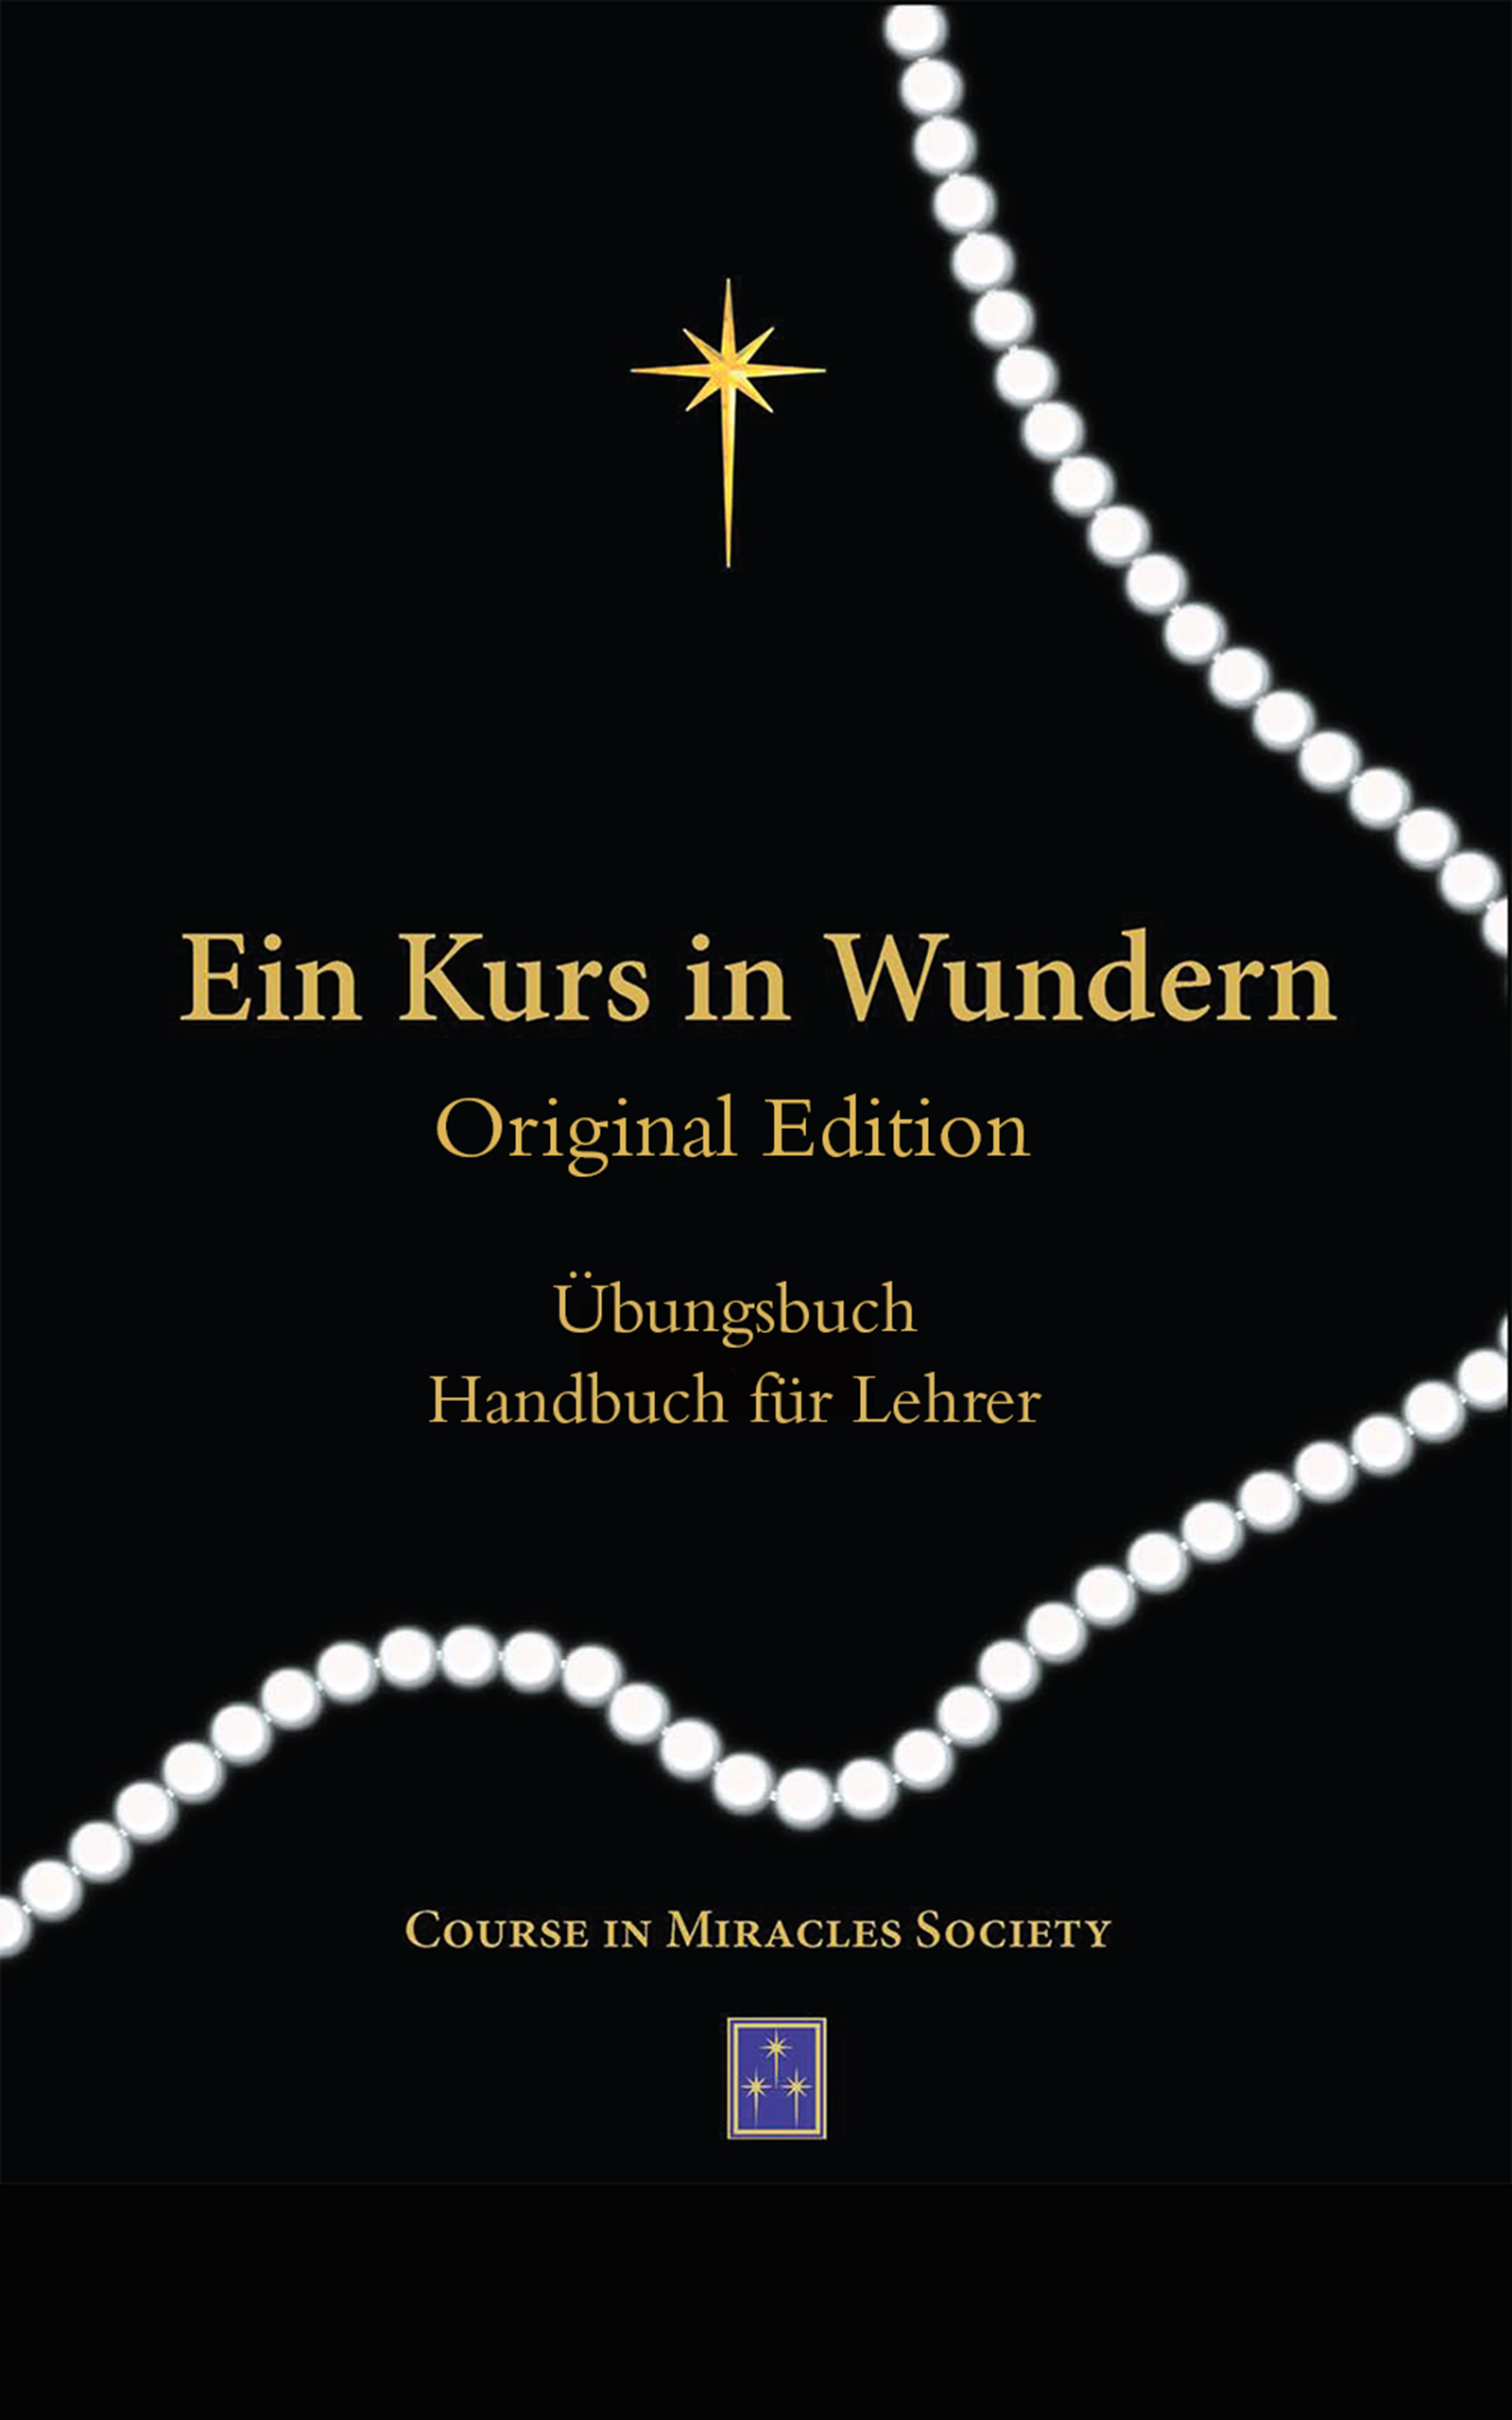 EIN KURS IN WUNDERN ORIGINAL EDITION® EPUB Übungsbuch und Handbuch für Lehrer